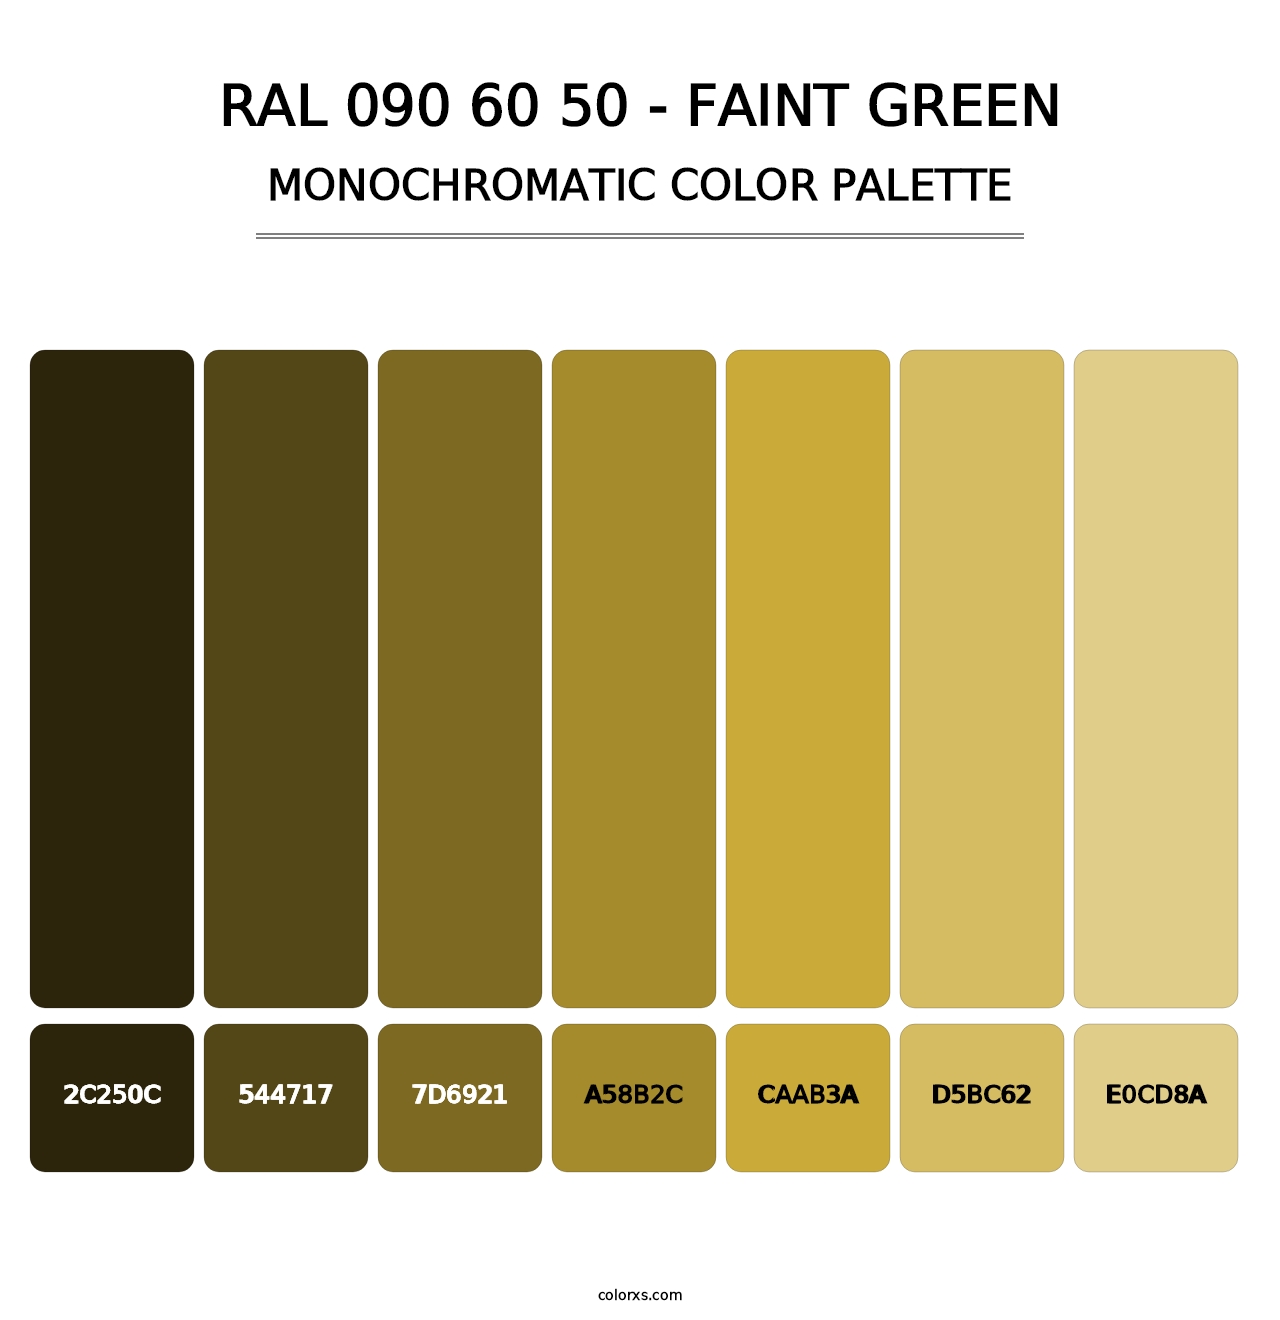 RAL 090 60 50 - Faint Green - Monochromatic Color Palette